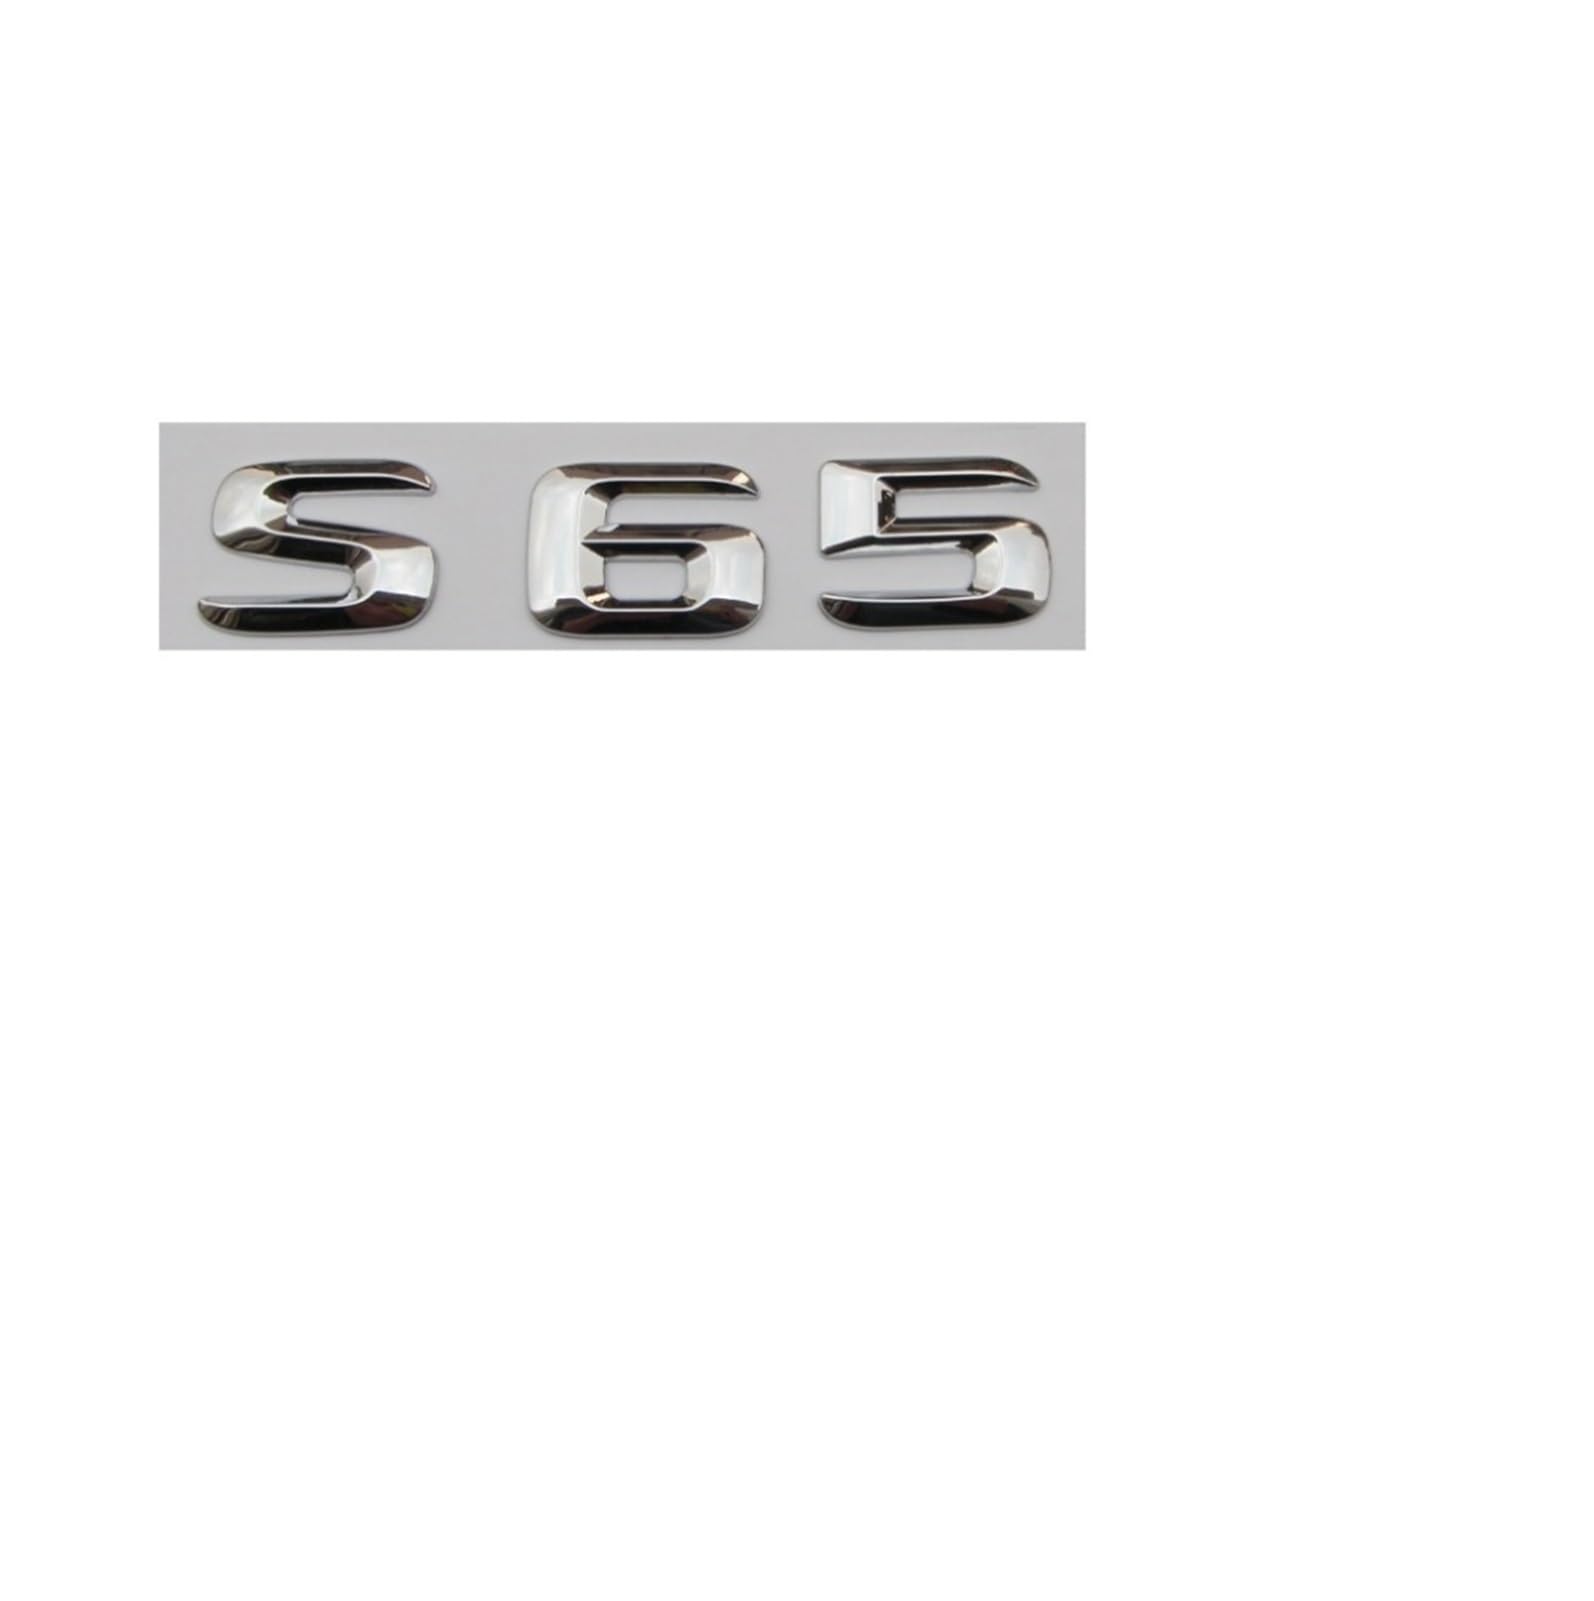 LHYFAGQK Chrom glänzendes silbernes ABS-Kofferraum-Hecknummer-Buchstaben-Wörter-Abzeichen-Emblem-Aufkleber-Aufkleber, kompatibel mit Mercedes-Benz S65 Abzeichen Autoaufkleber von LHYFAGQK